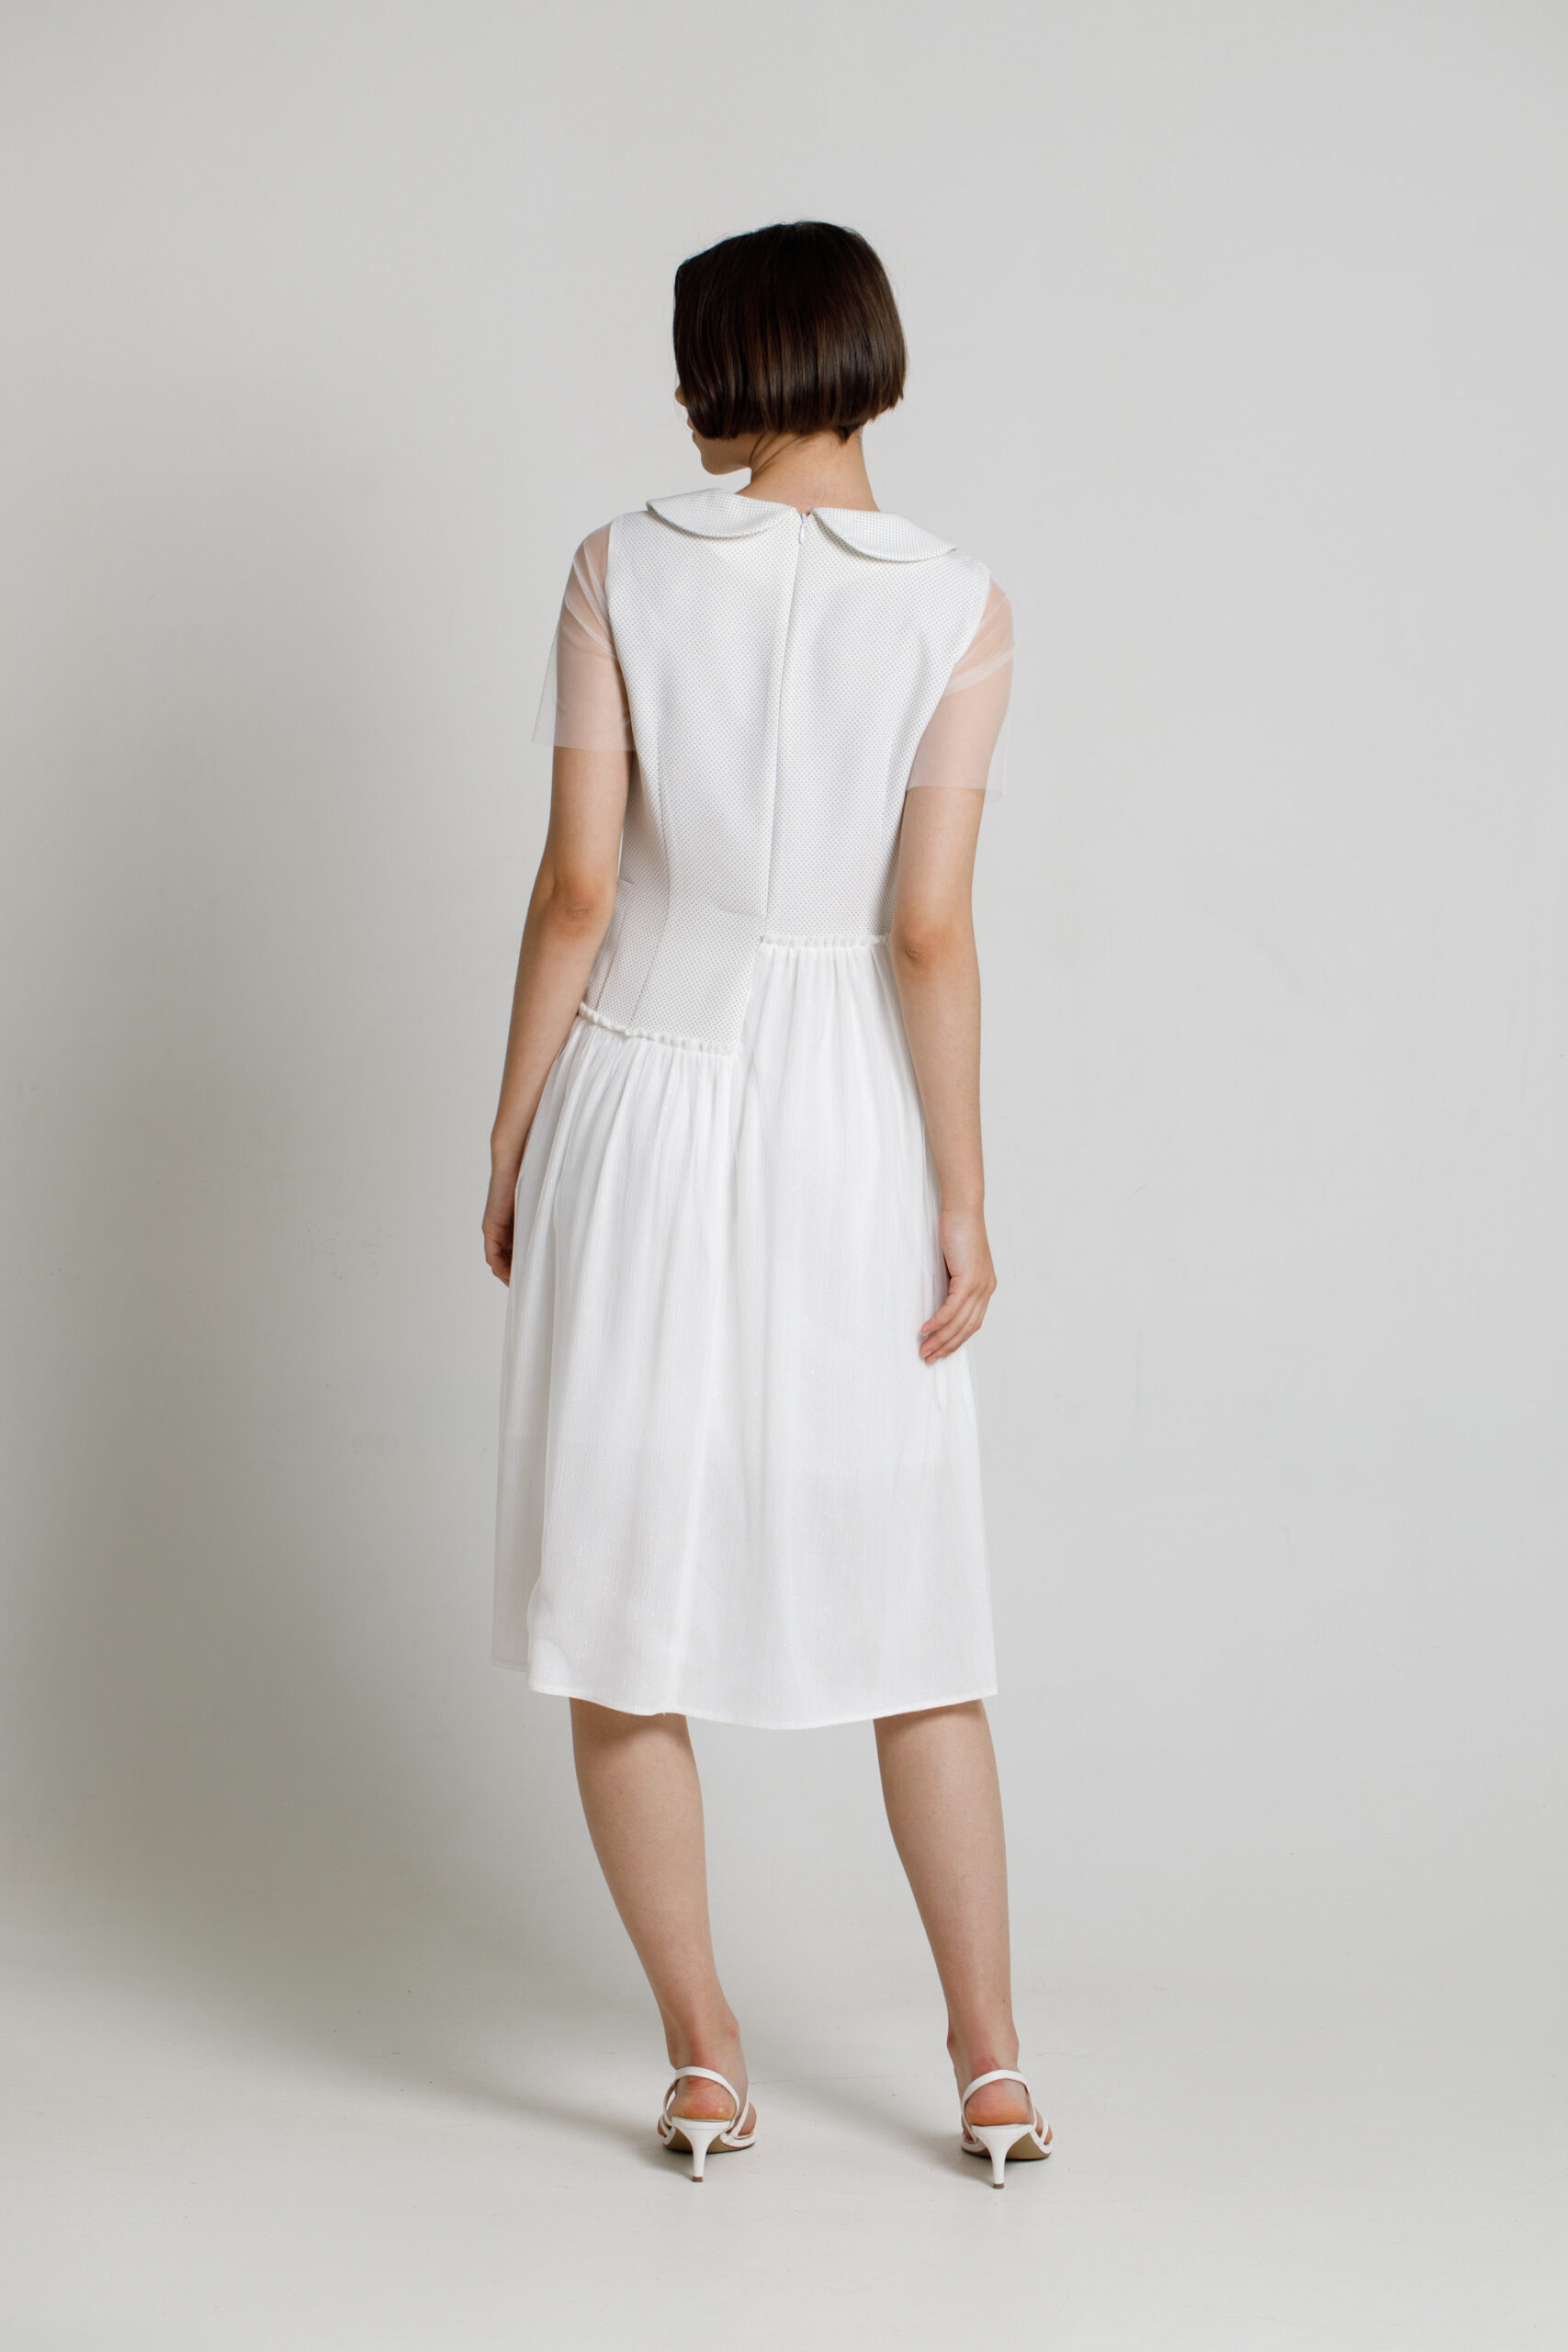 PALMA casual white asymmetric dress. Natural fabrics, original design, handmade embroidery